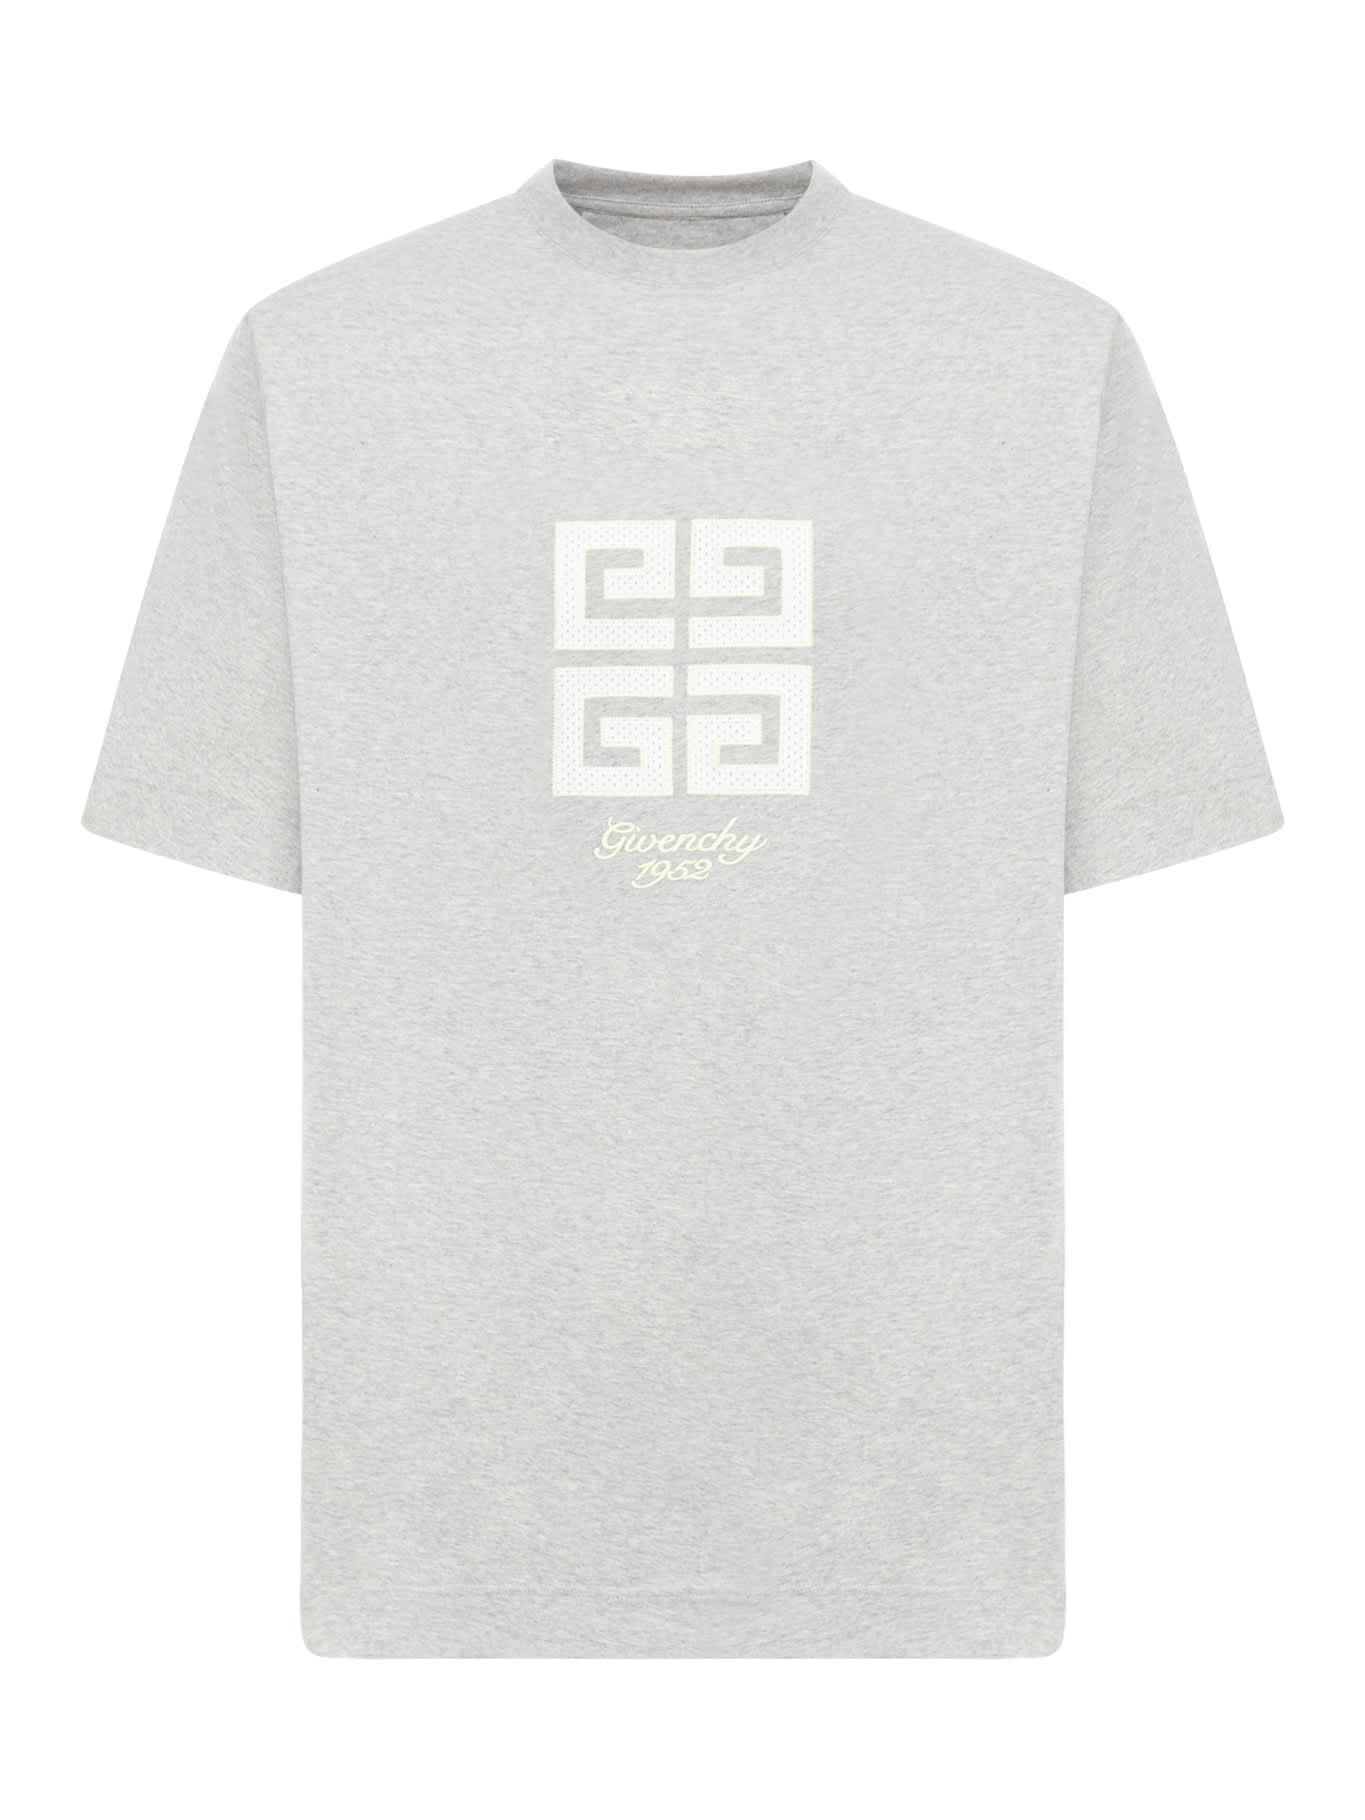 Shop Givenchy New Studio Fit T-shirt In Light Grey Melange